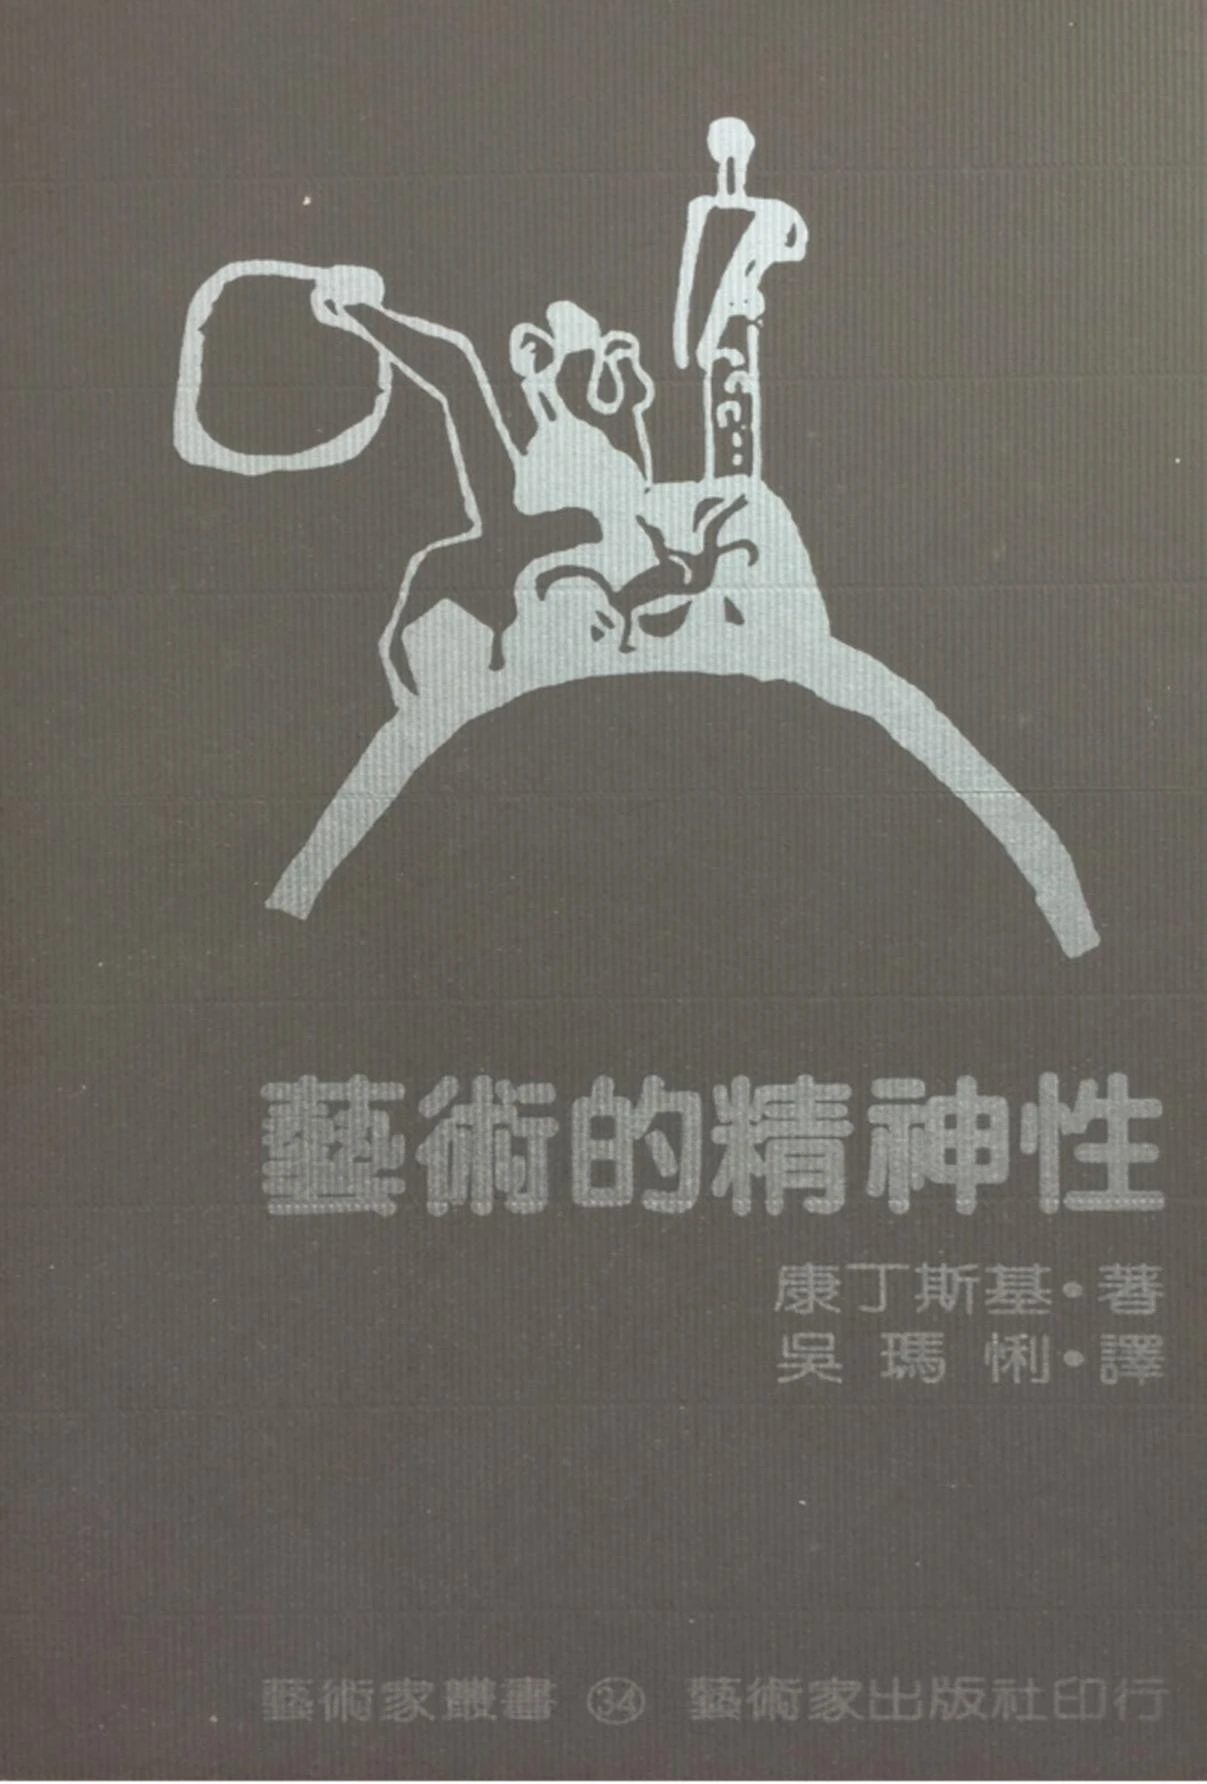 吳瑪悧譯，康丁斯基著，《藝術的精神性》專書封面，台北：藝術家出版社，1985 ©藝術家出版社提供-圖片